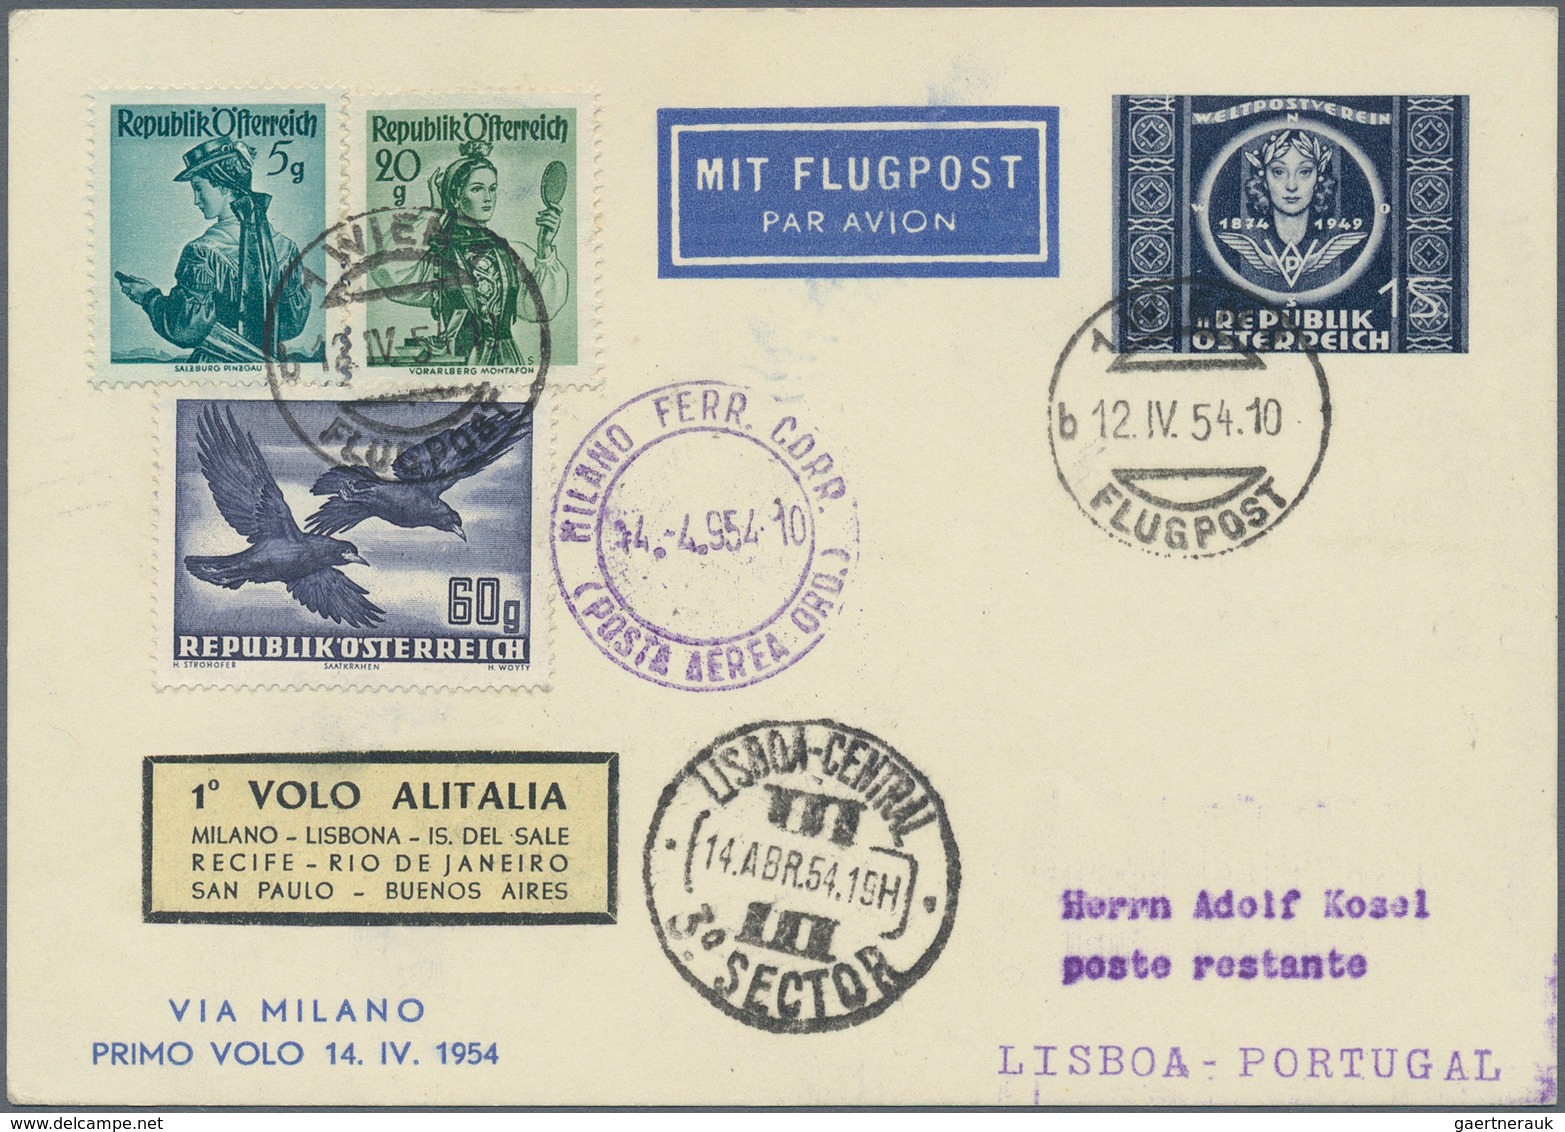 Österreich - Flugpost: 1949/2003, vielseitige Partie von ca. 170 Briefen und Karten, dabei frühe Bal